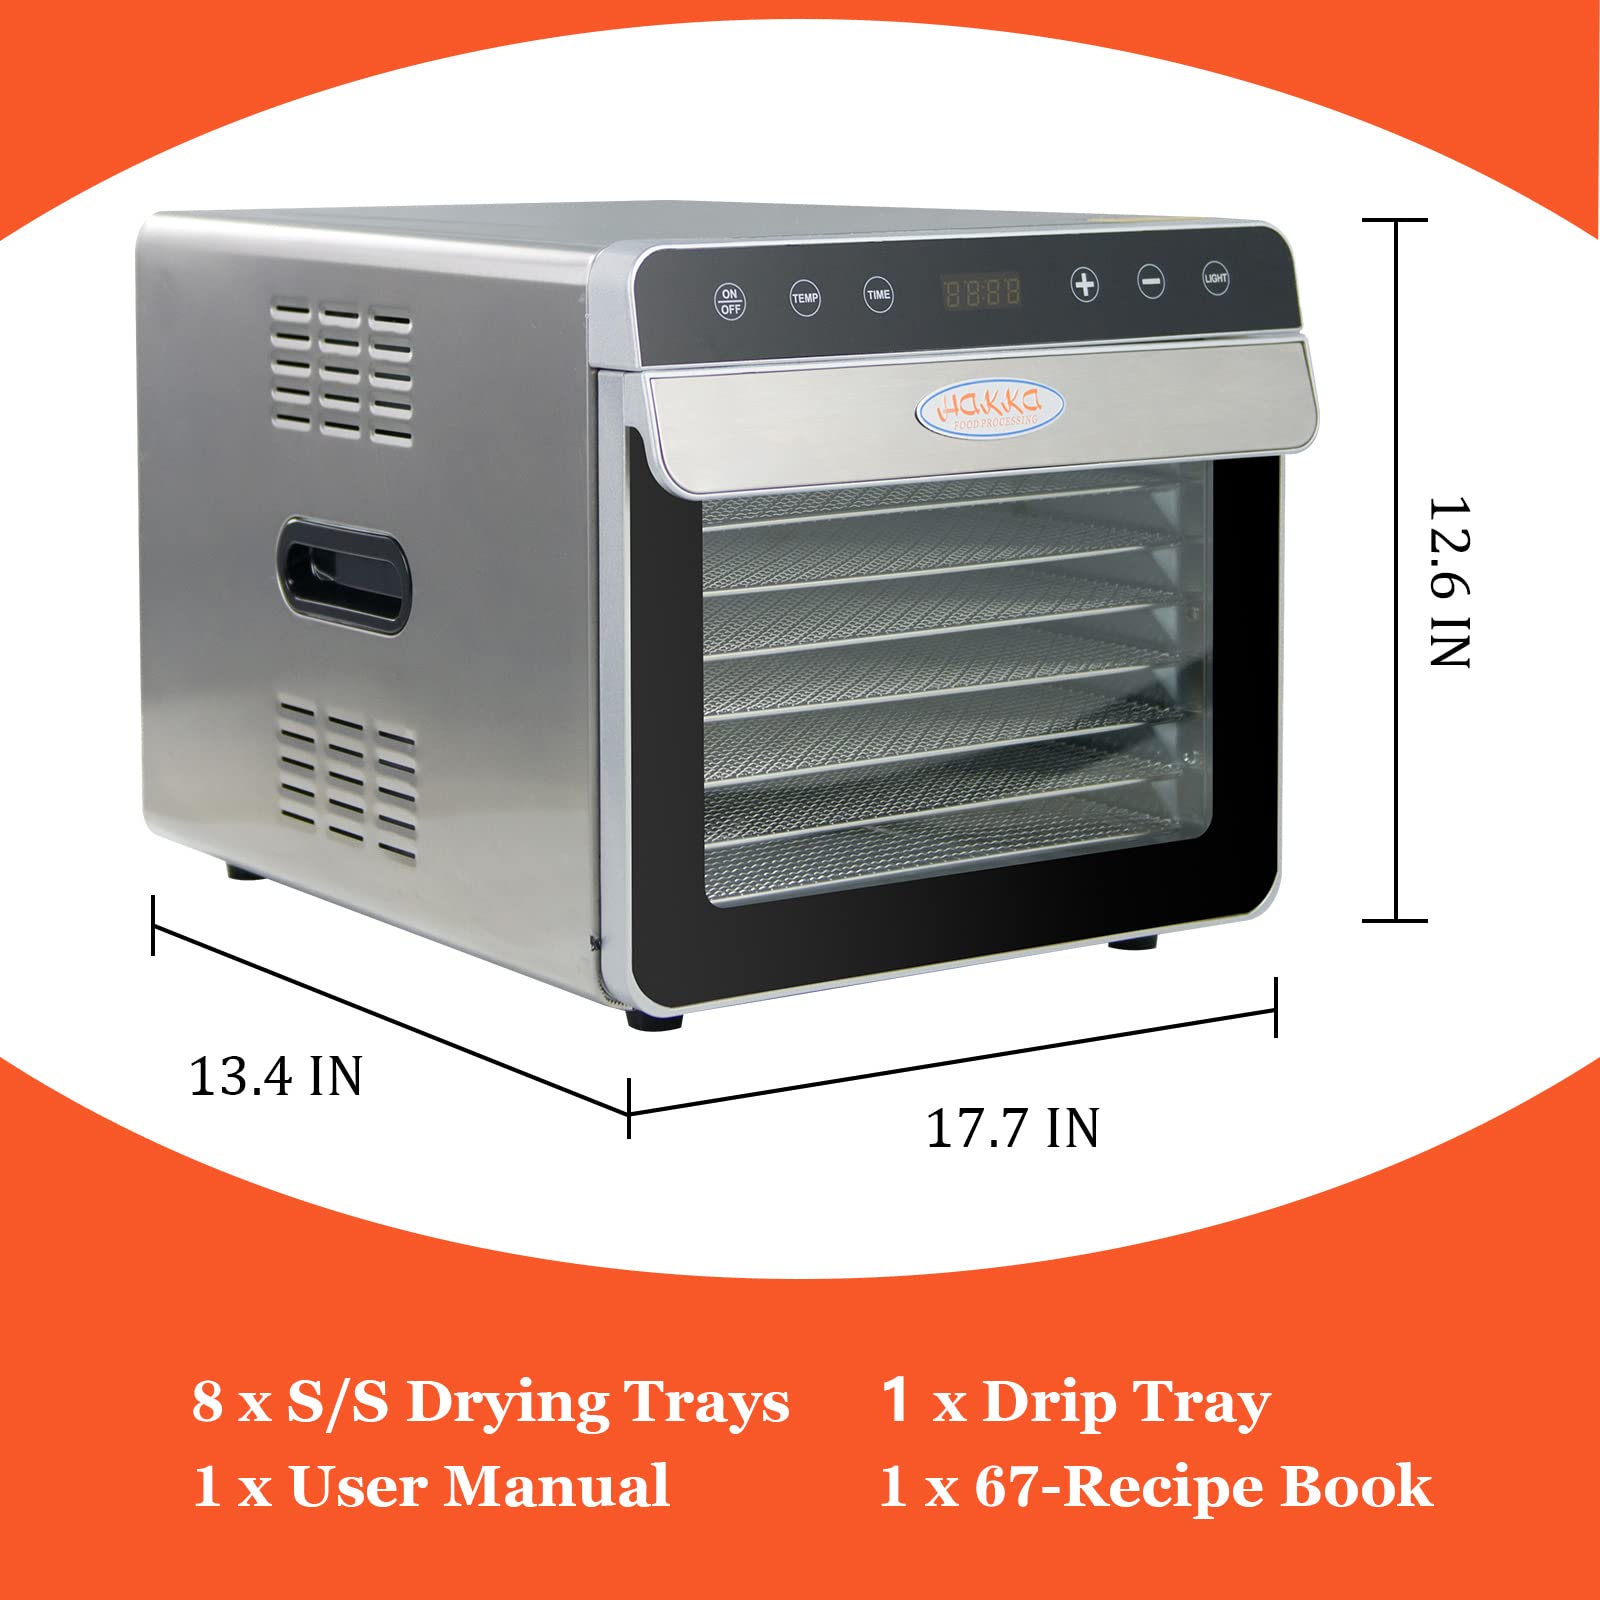 5/8-Tray Electeic Food Dehydrator Machine Fruit Meat Jerky Dryer